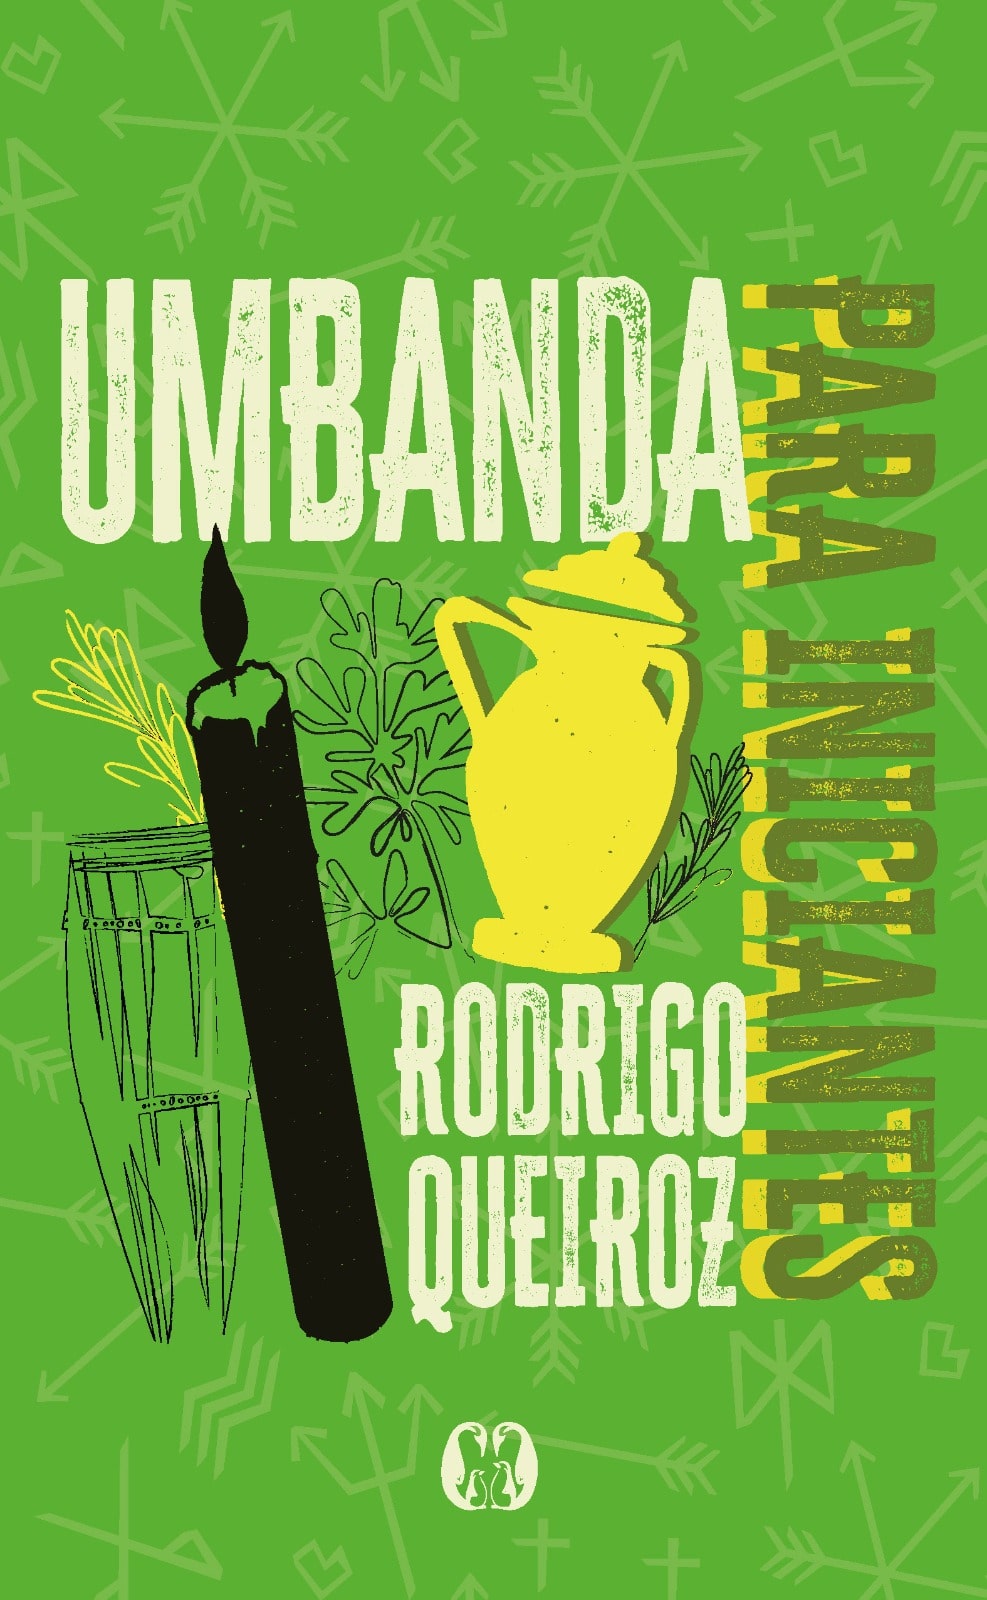 Dia Nacional da Umbanda (15/11): 115 anos de história, luta e práticas mediúnicas